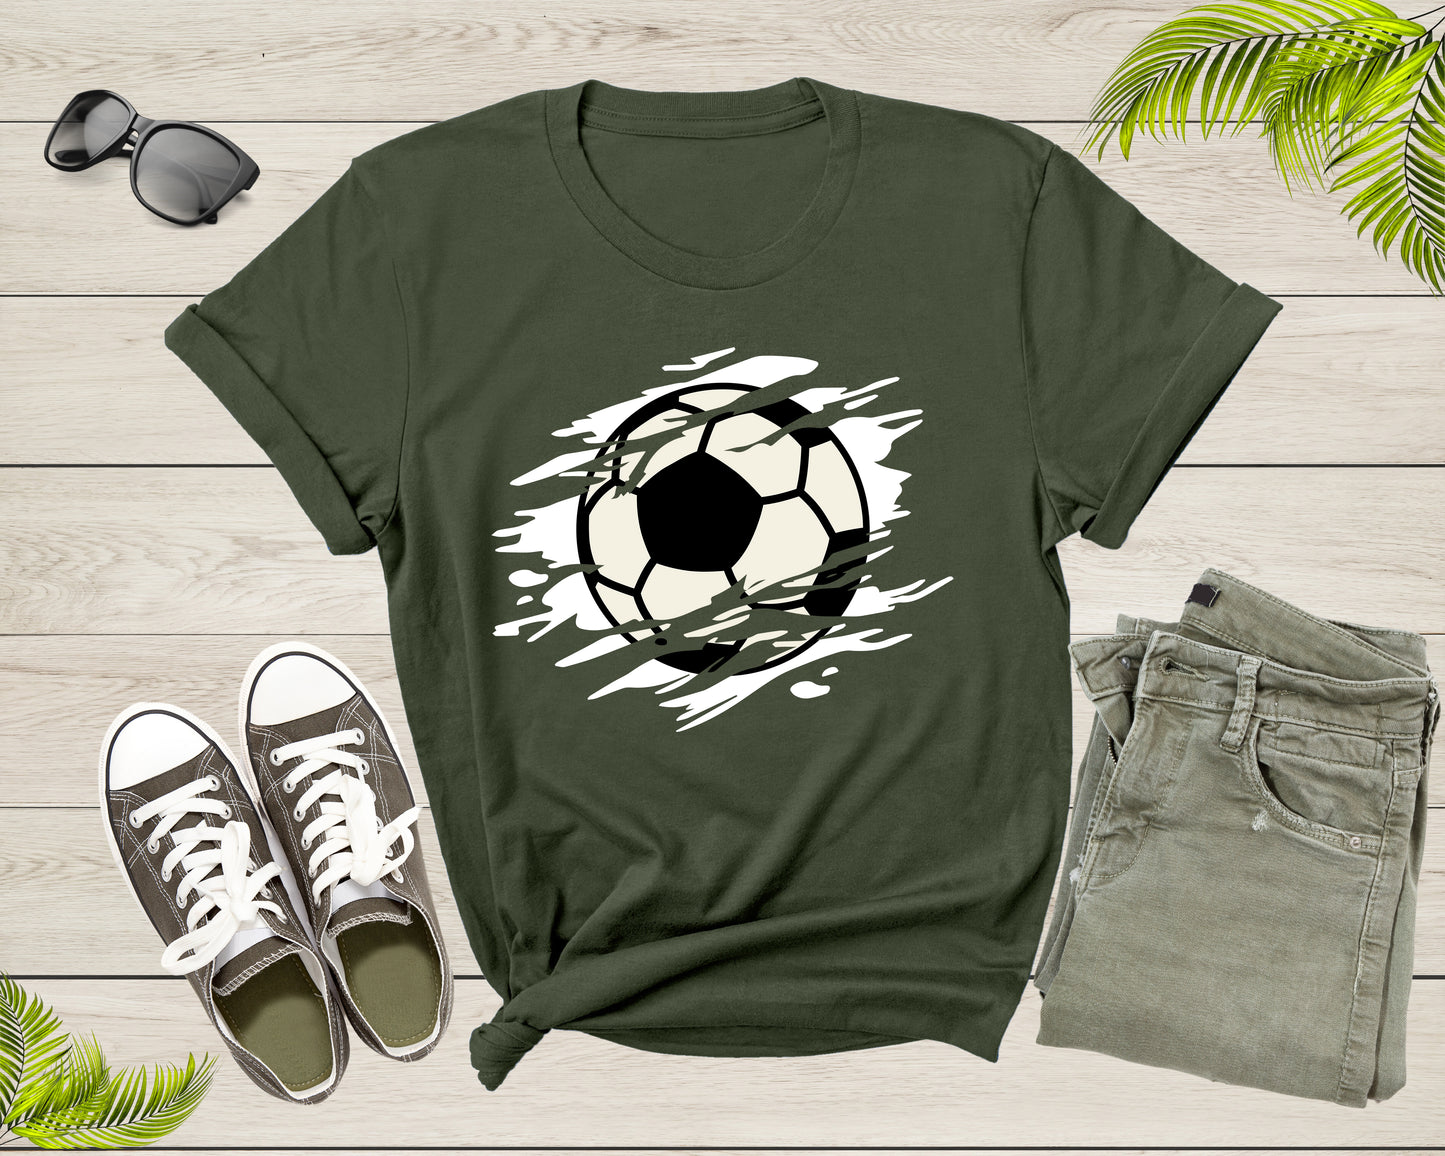 Cool Soccer Ball Silhouette Soccer Sports Team Games T-Shirt Soccer Player Gift T Shirt for Men Women Kids Boys Girls Soccer Graphic Tshirt